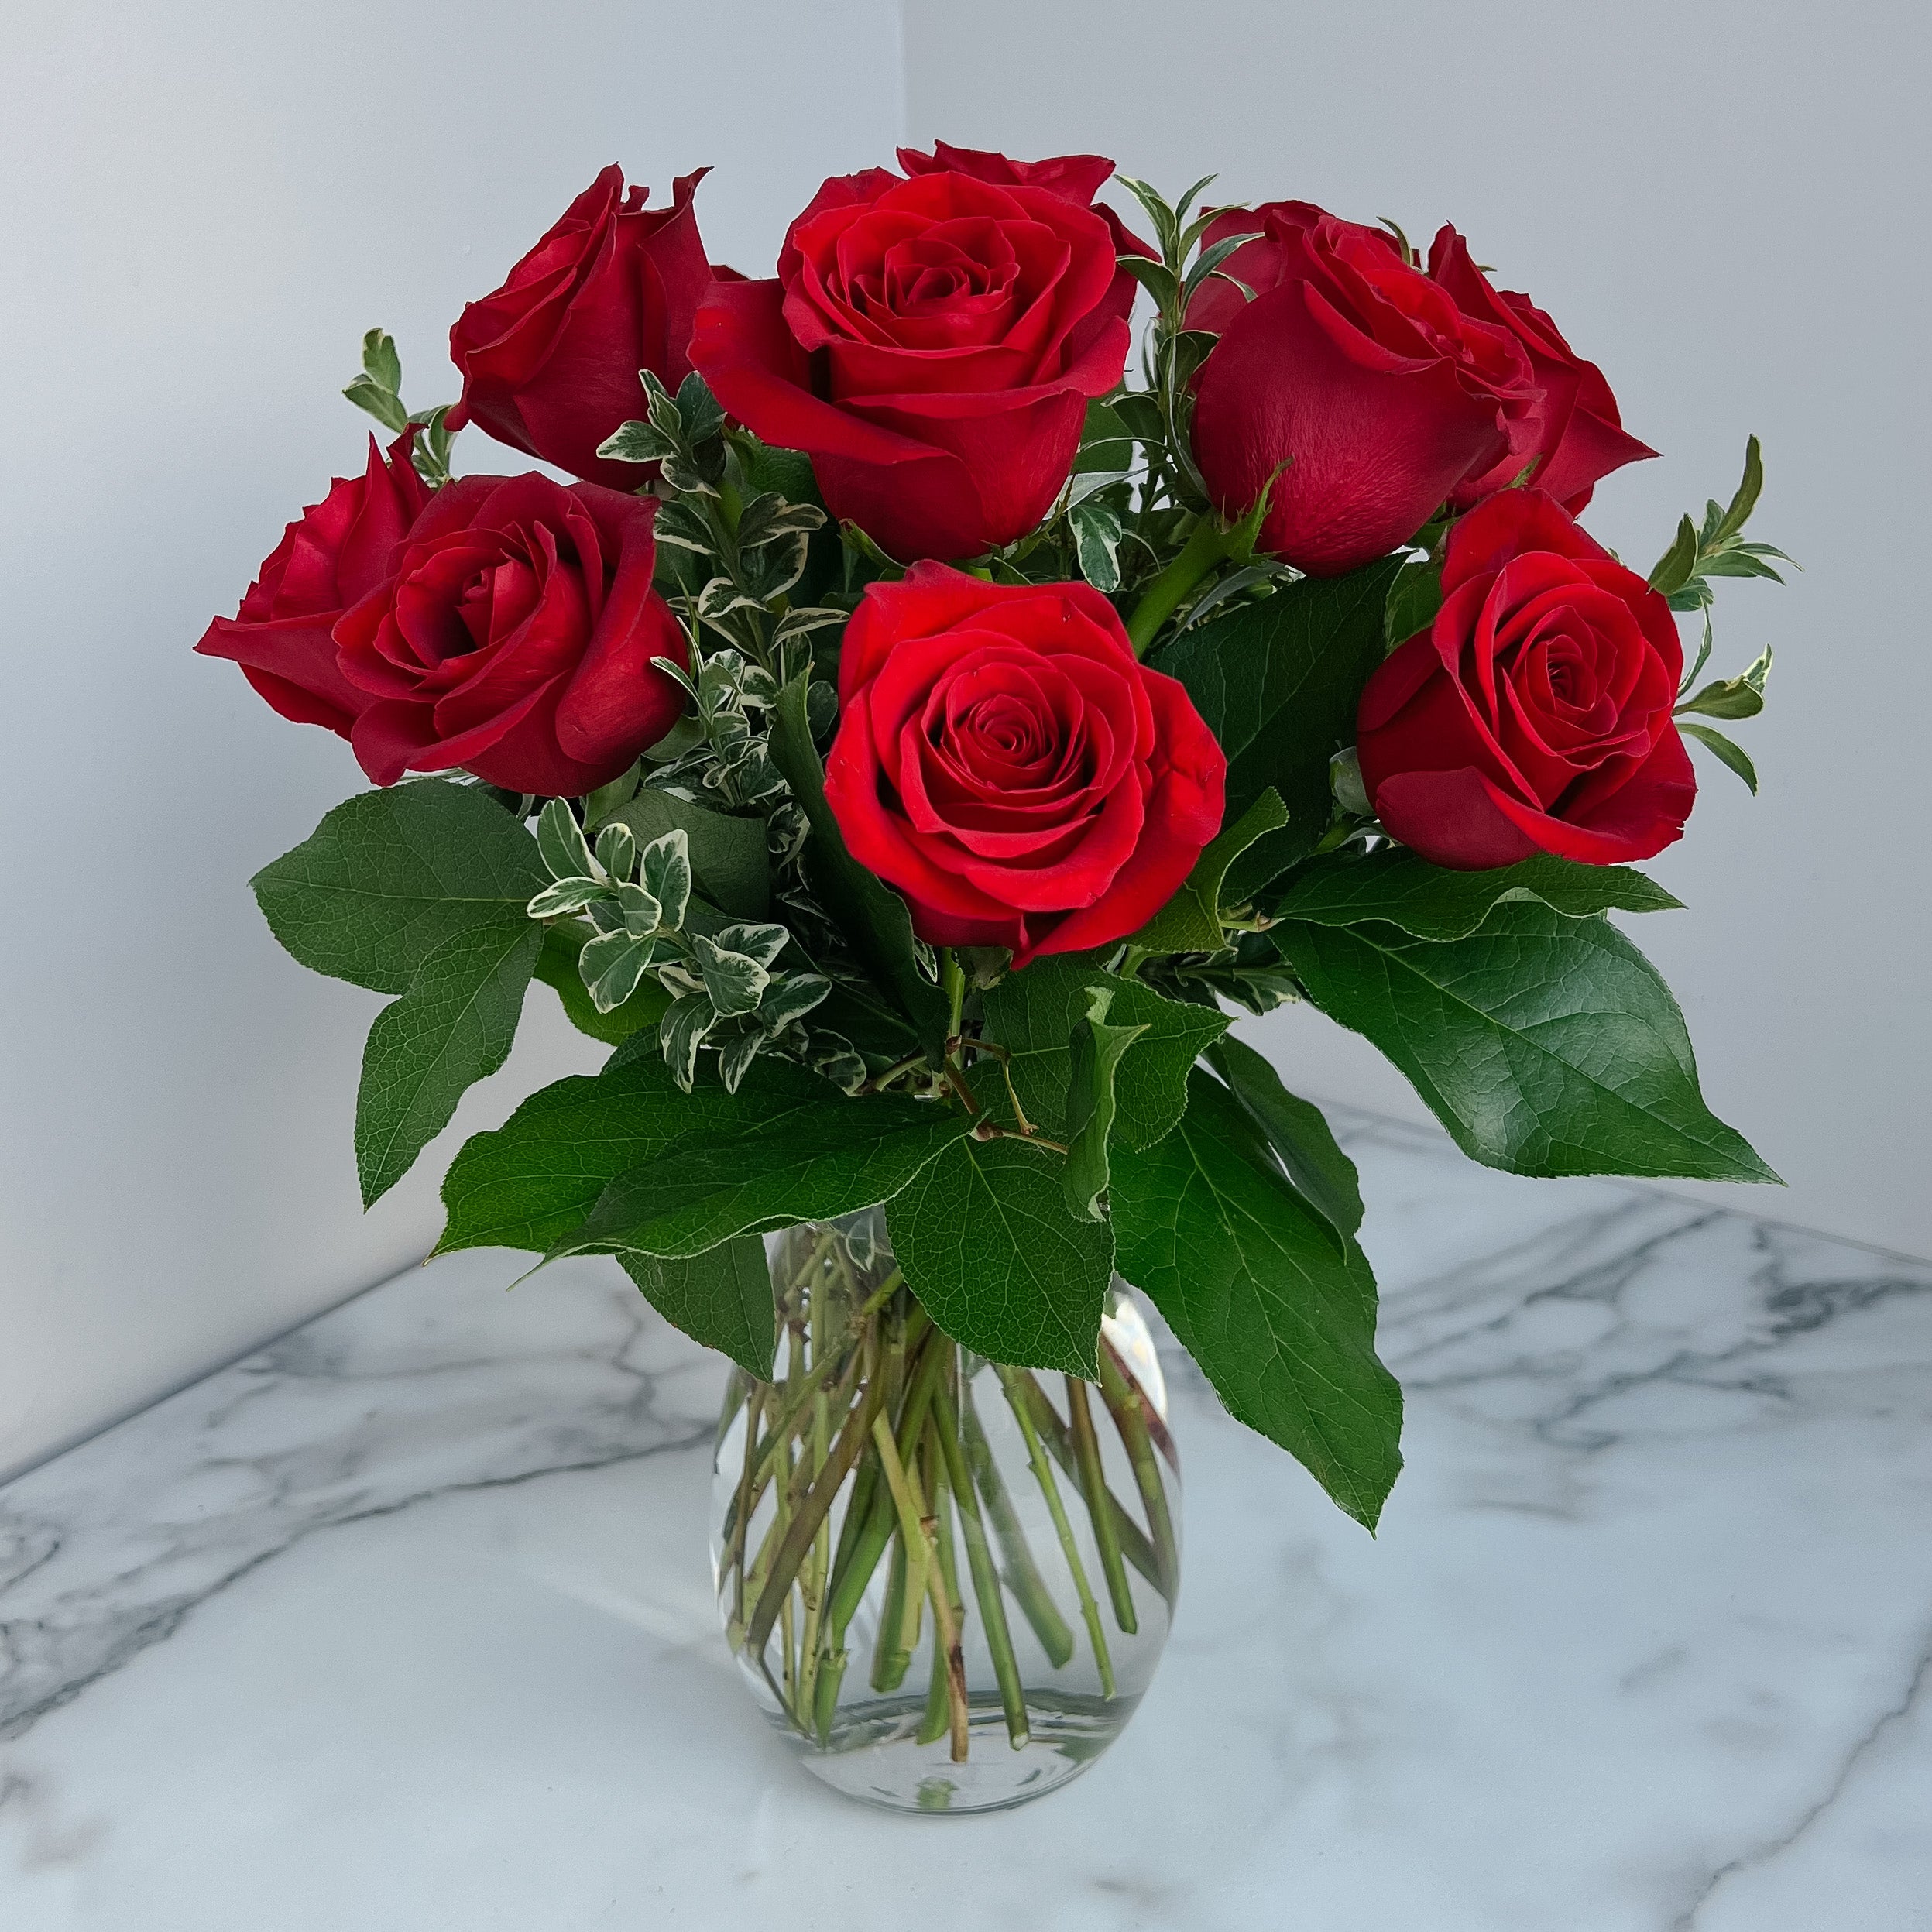 Signature Vased Roses